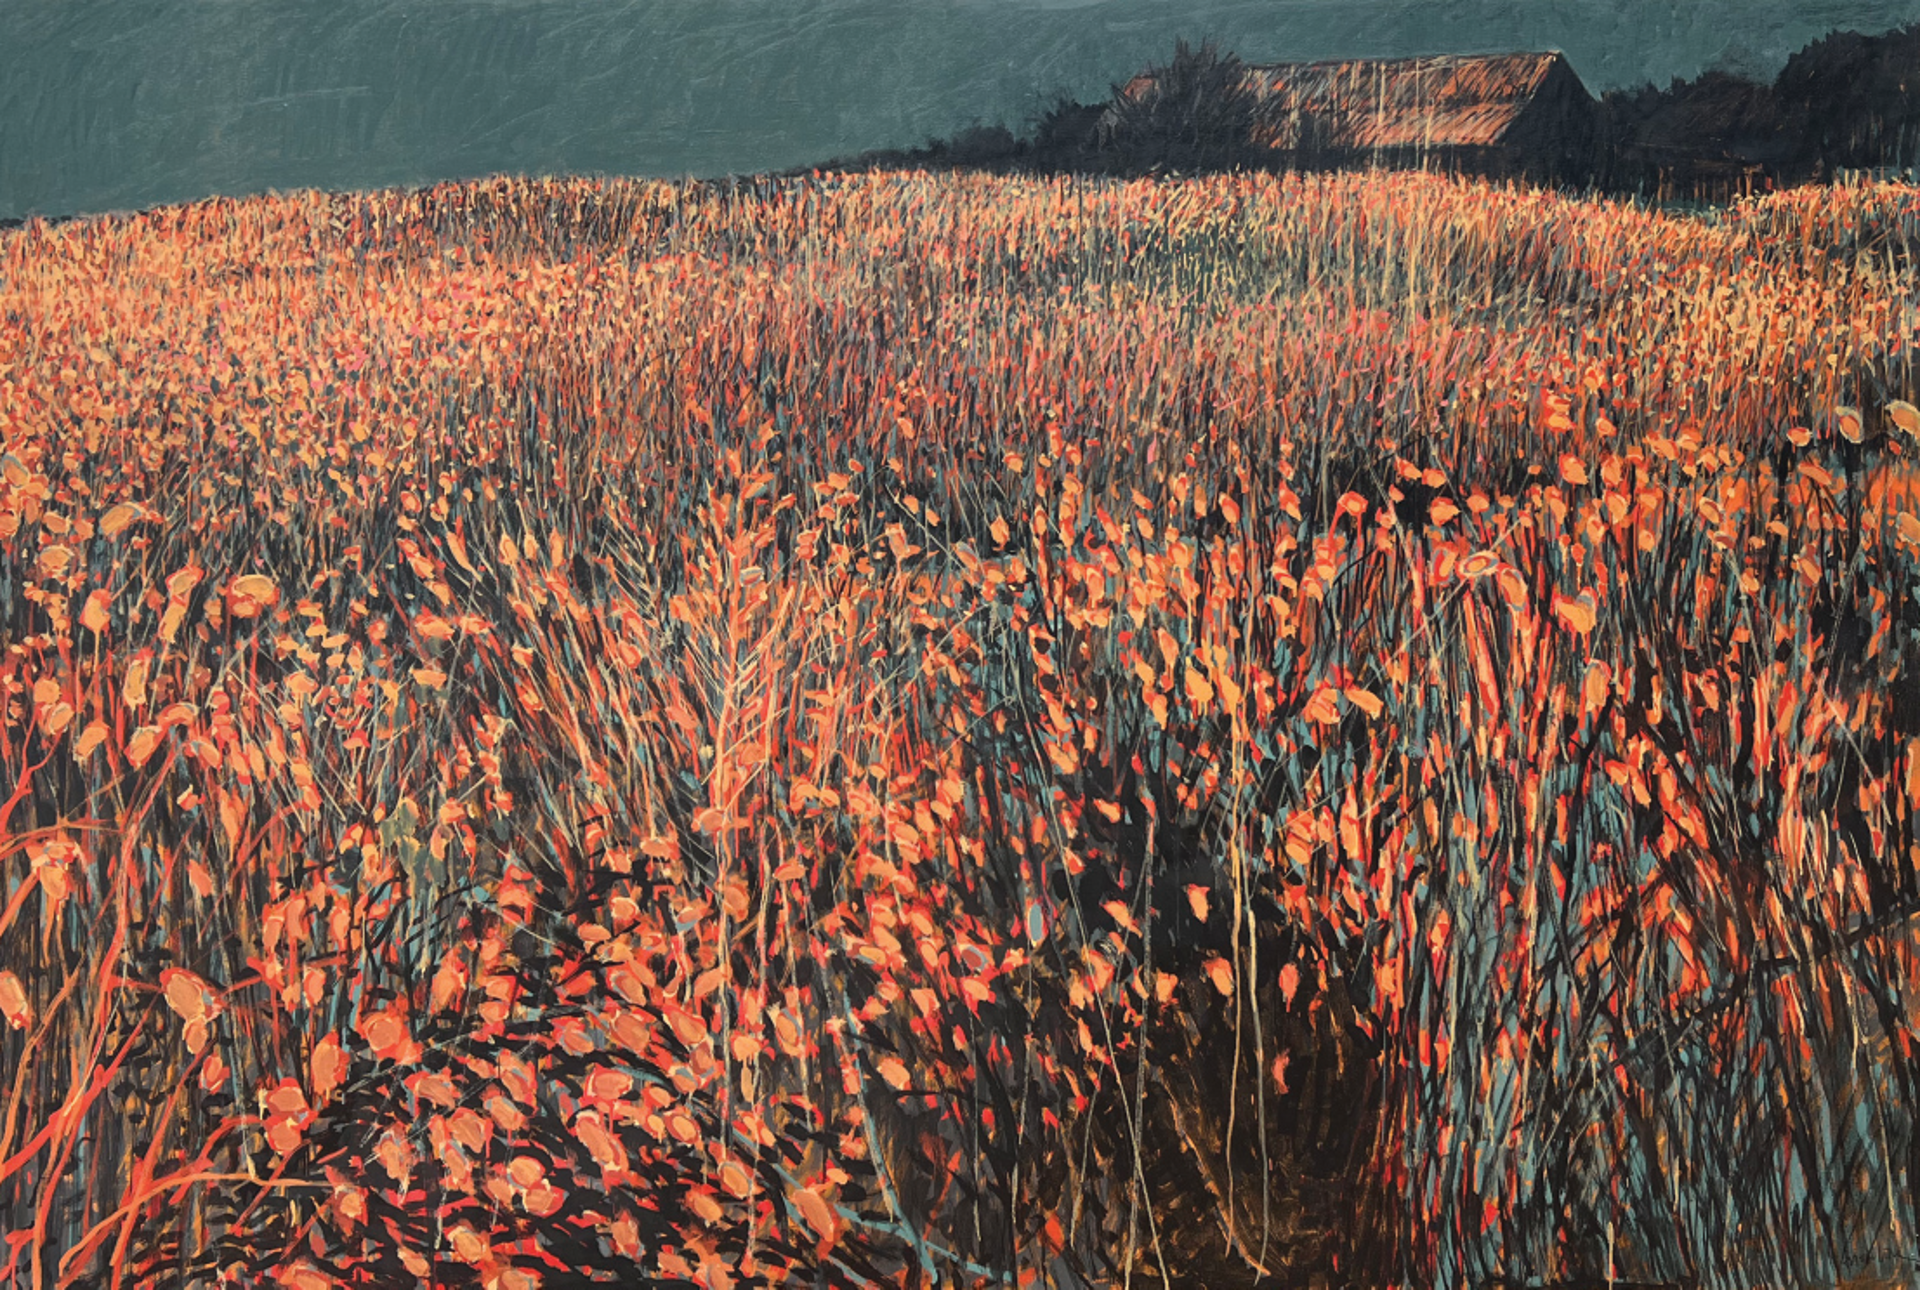 Fields #1 by William Anzalone